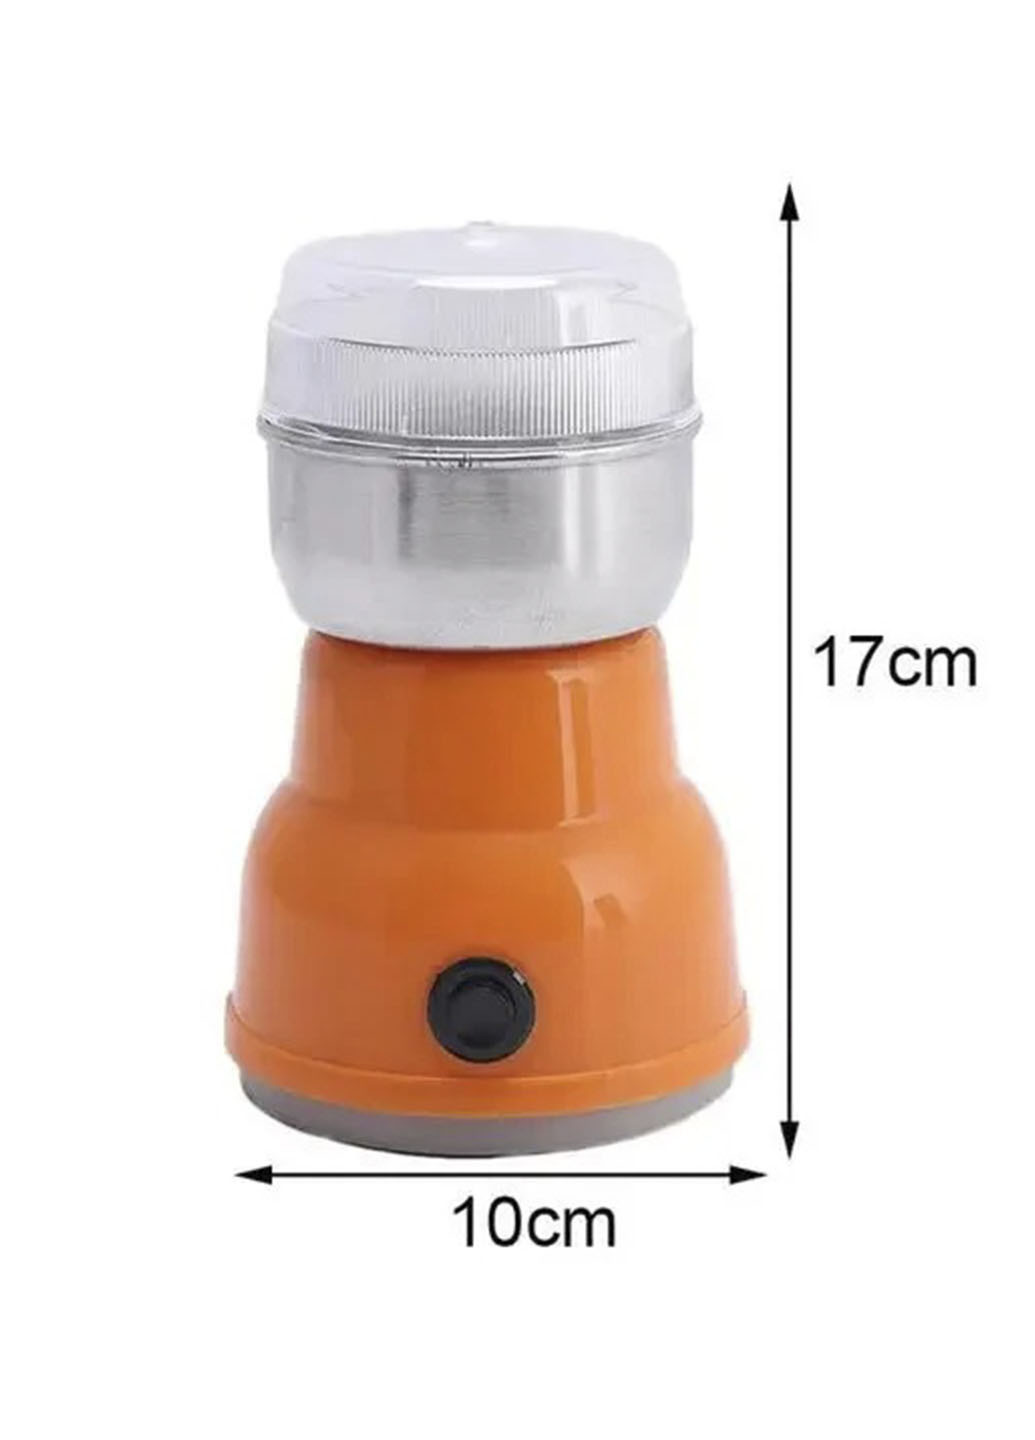 Электрическая кофемолка BEAiKA NS-384 150 Ват электроимпульсная XO (253070081)